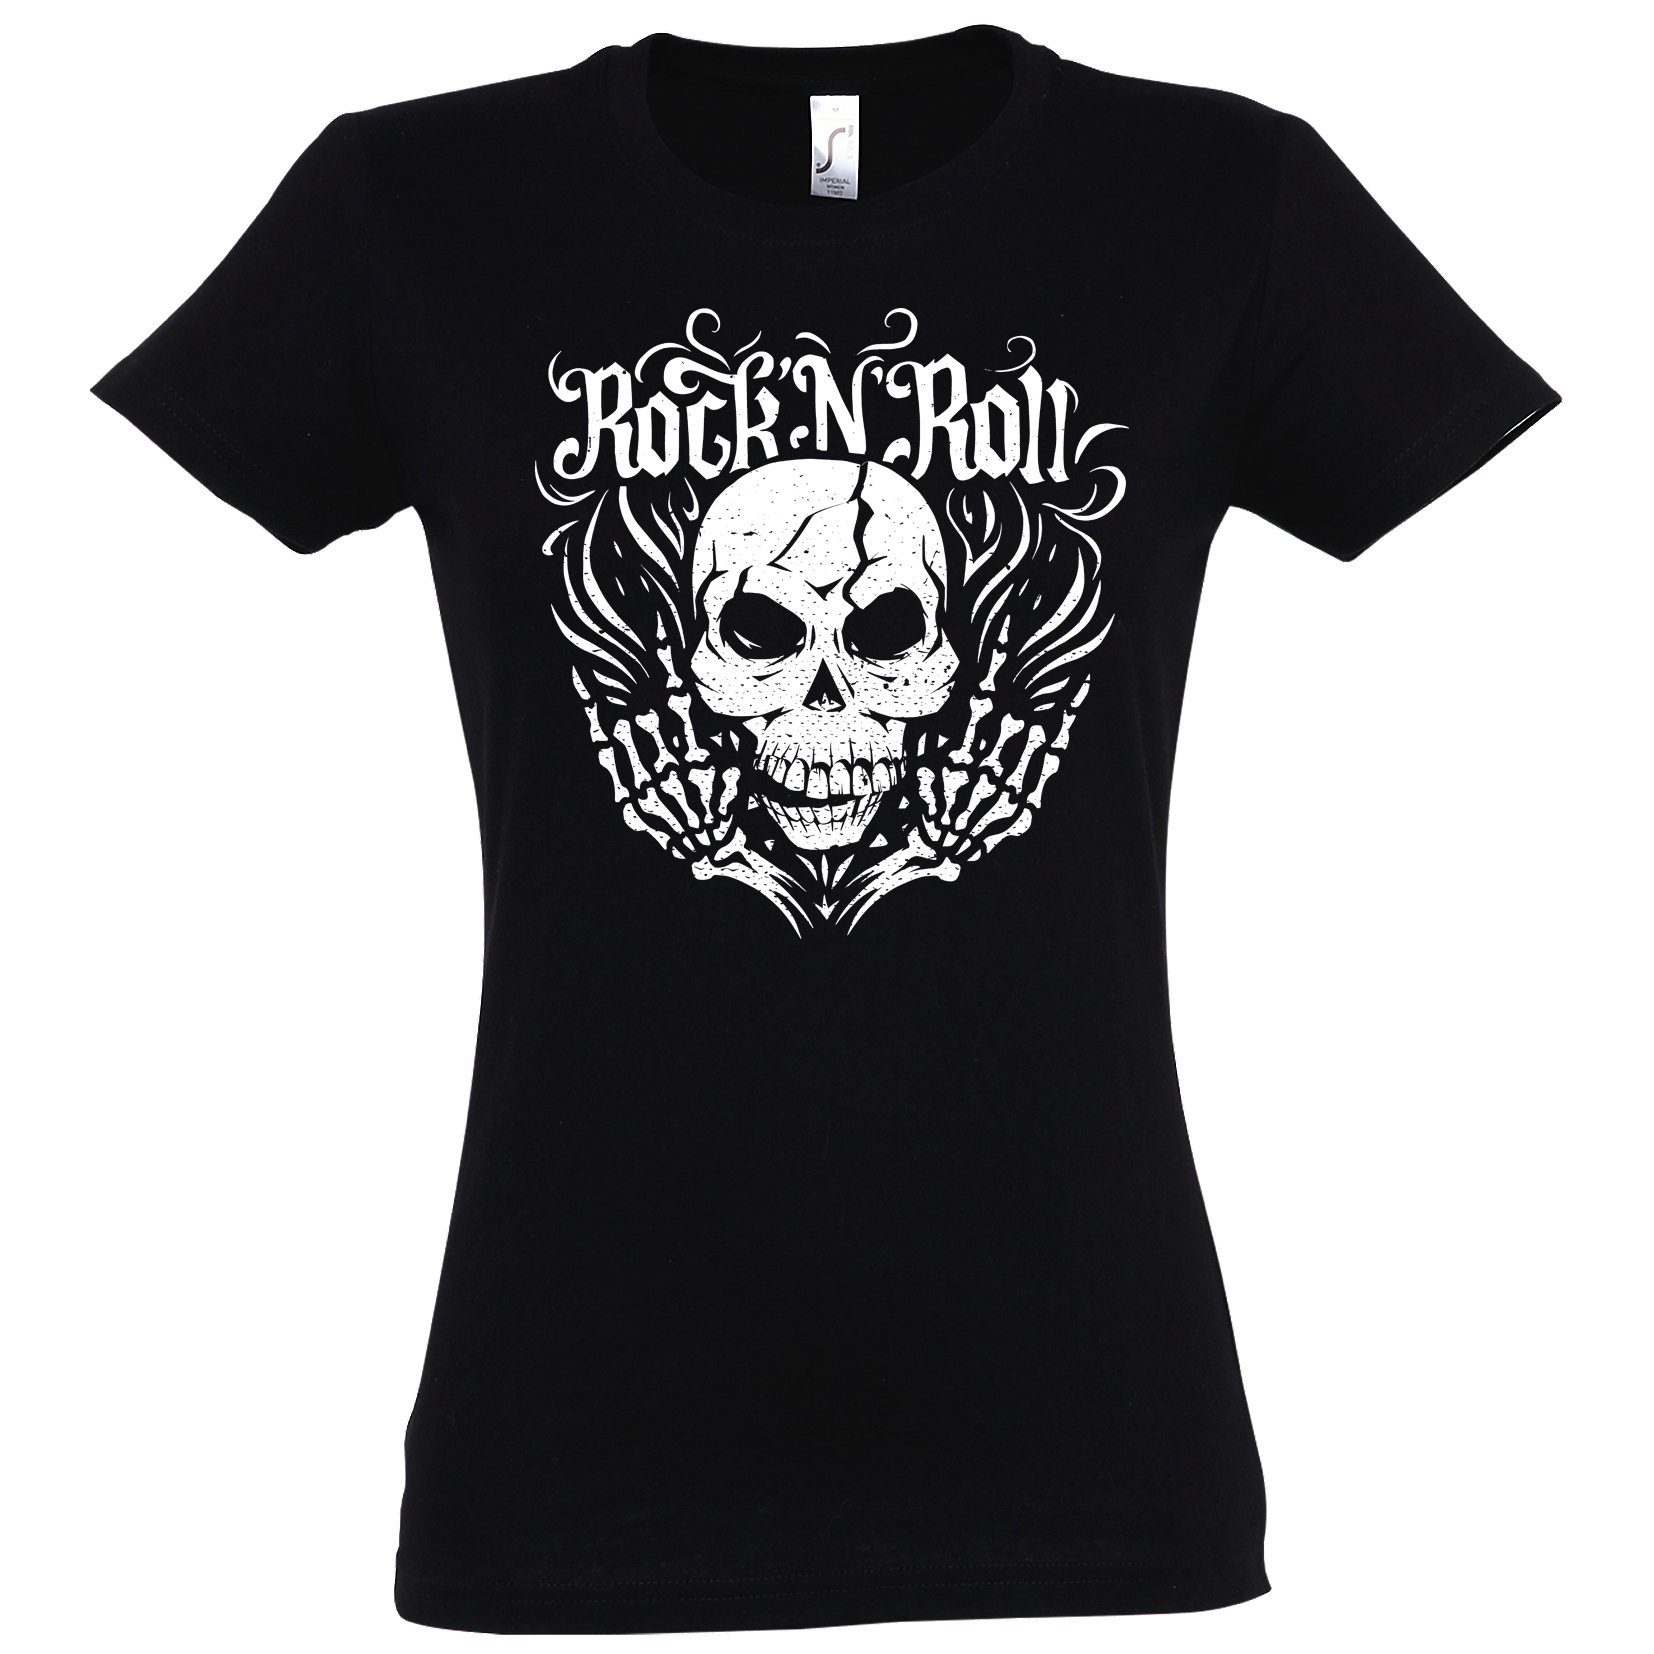 Youth Designz T-Shirt Skull Rock and Roll Damen Shirt im Fun-Look Mit modischem Print Schwarz